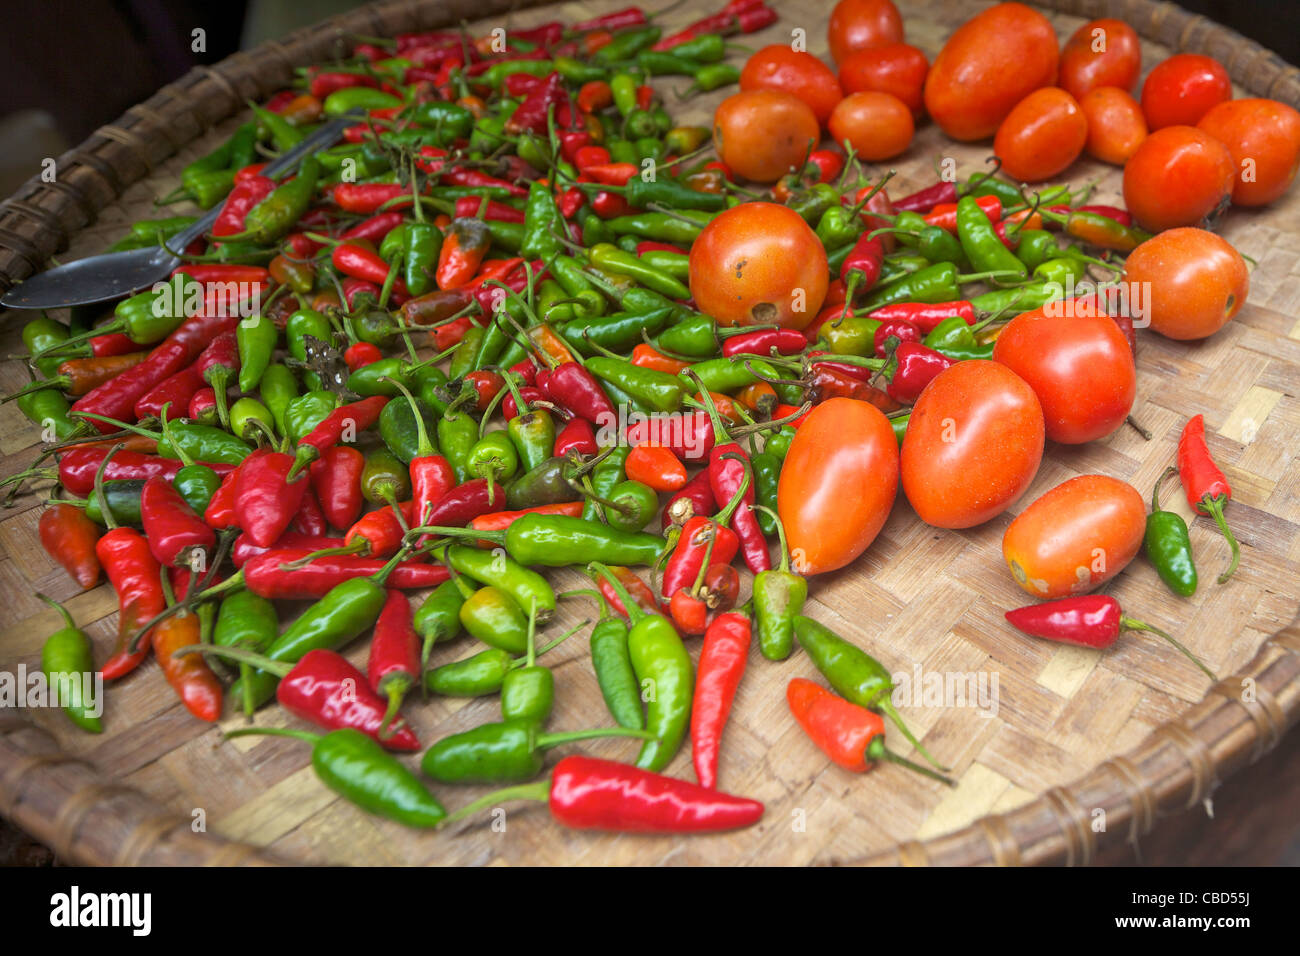 Los tomates, pimientos verdes y rojos, Nepal, Asia Foto de stock